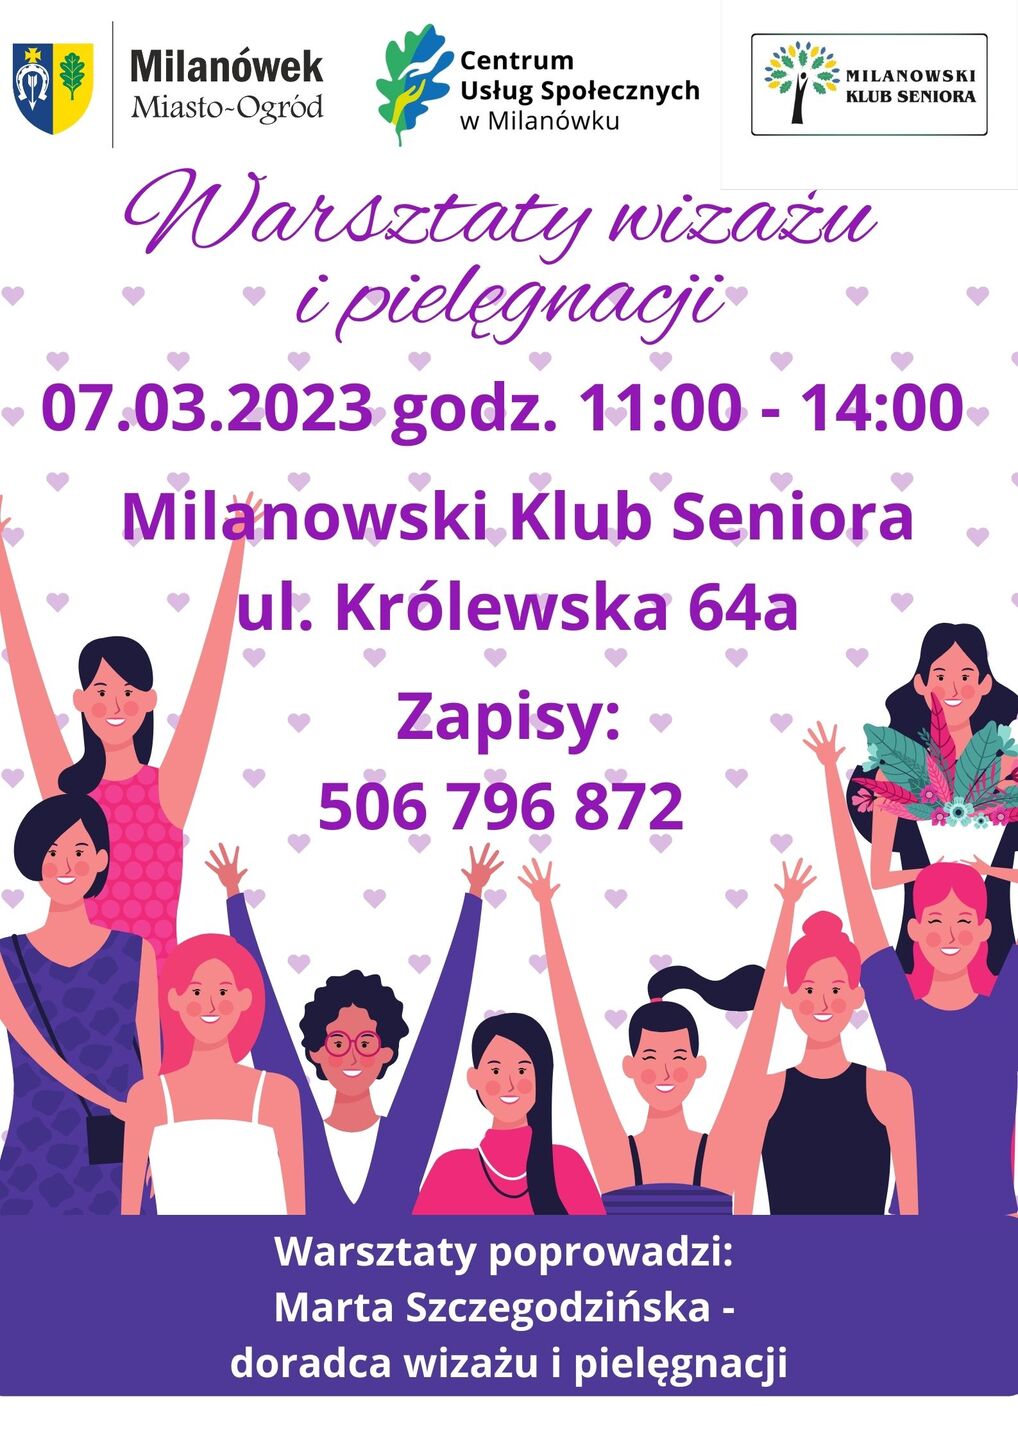 Milanowski Klub Seniora zaprasza na Dzień Kobiet